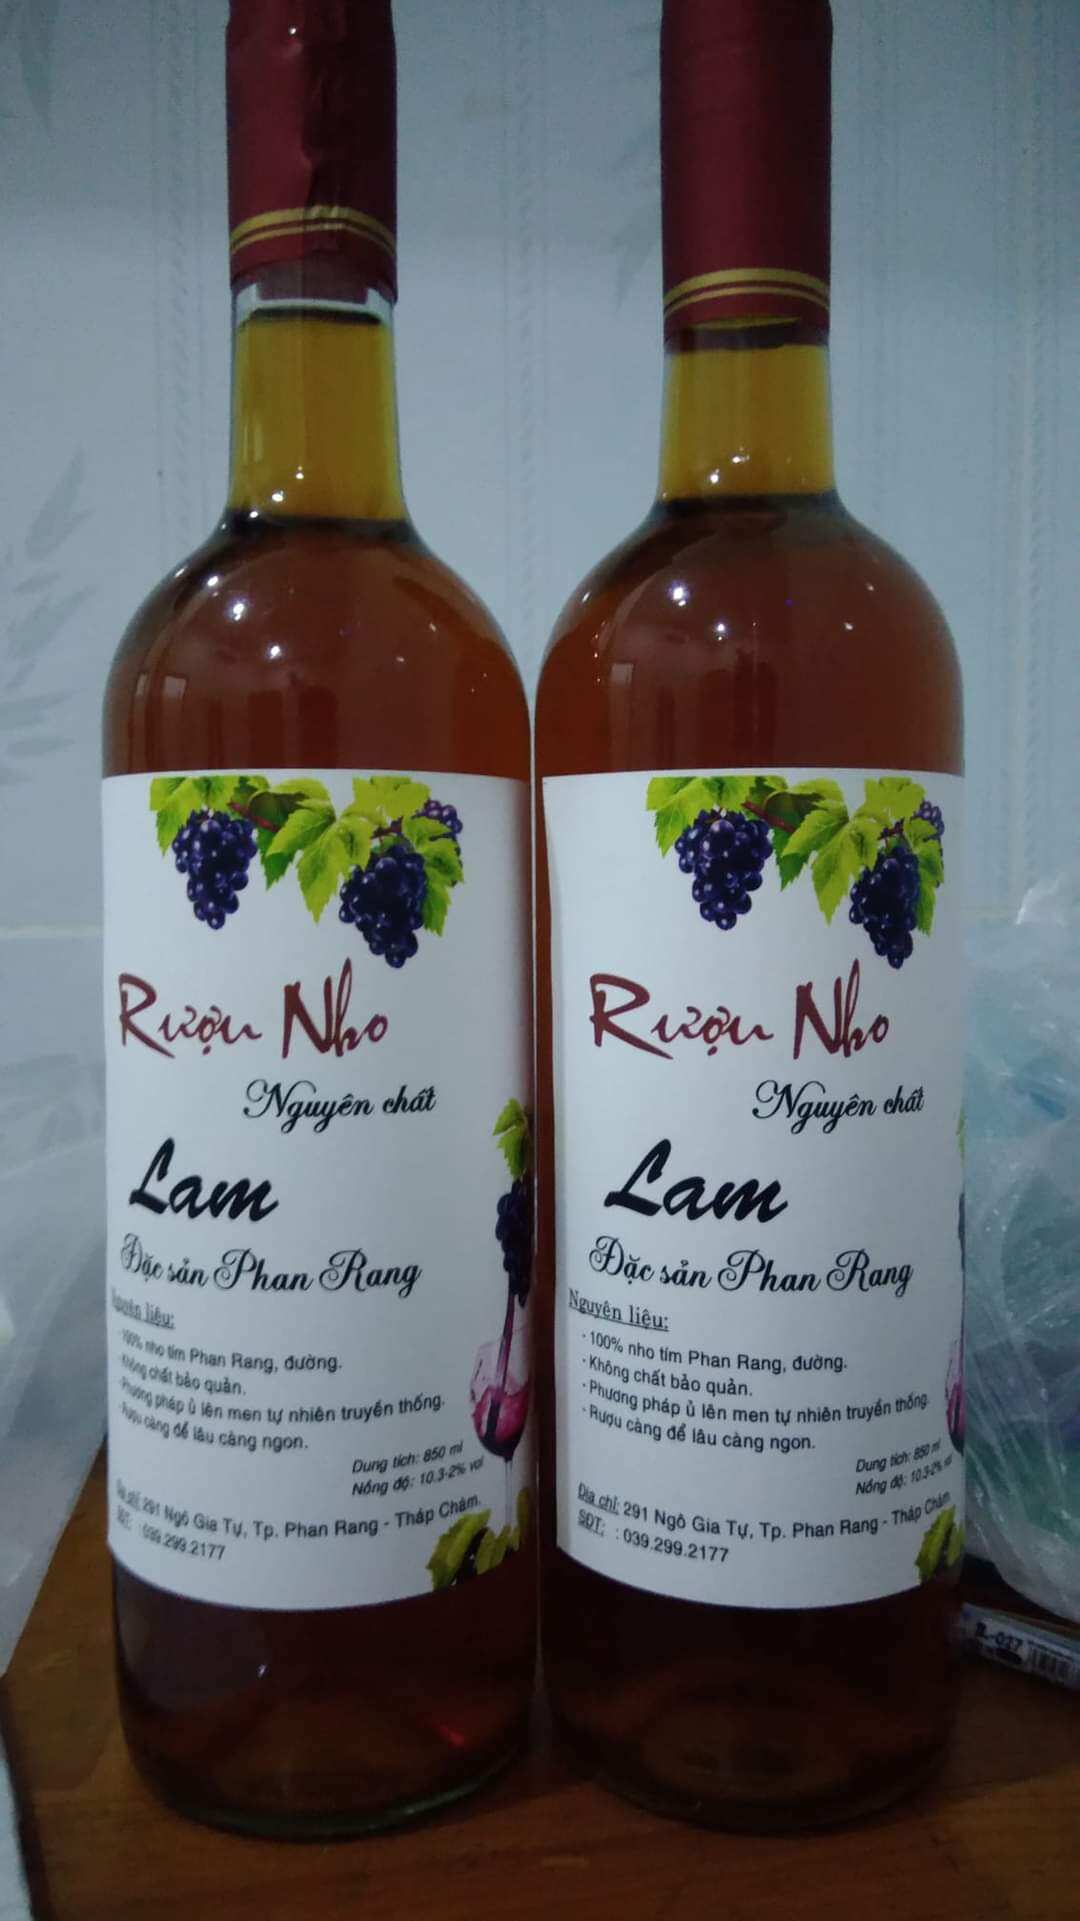 Lam - Rượu nho Phan Rang